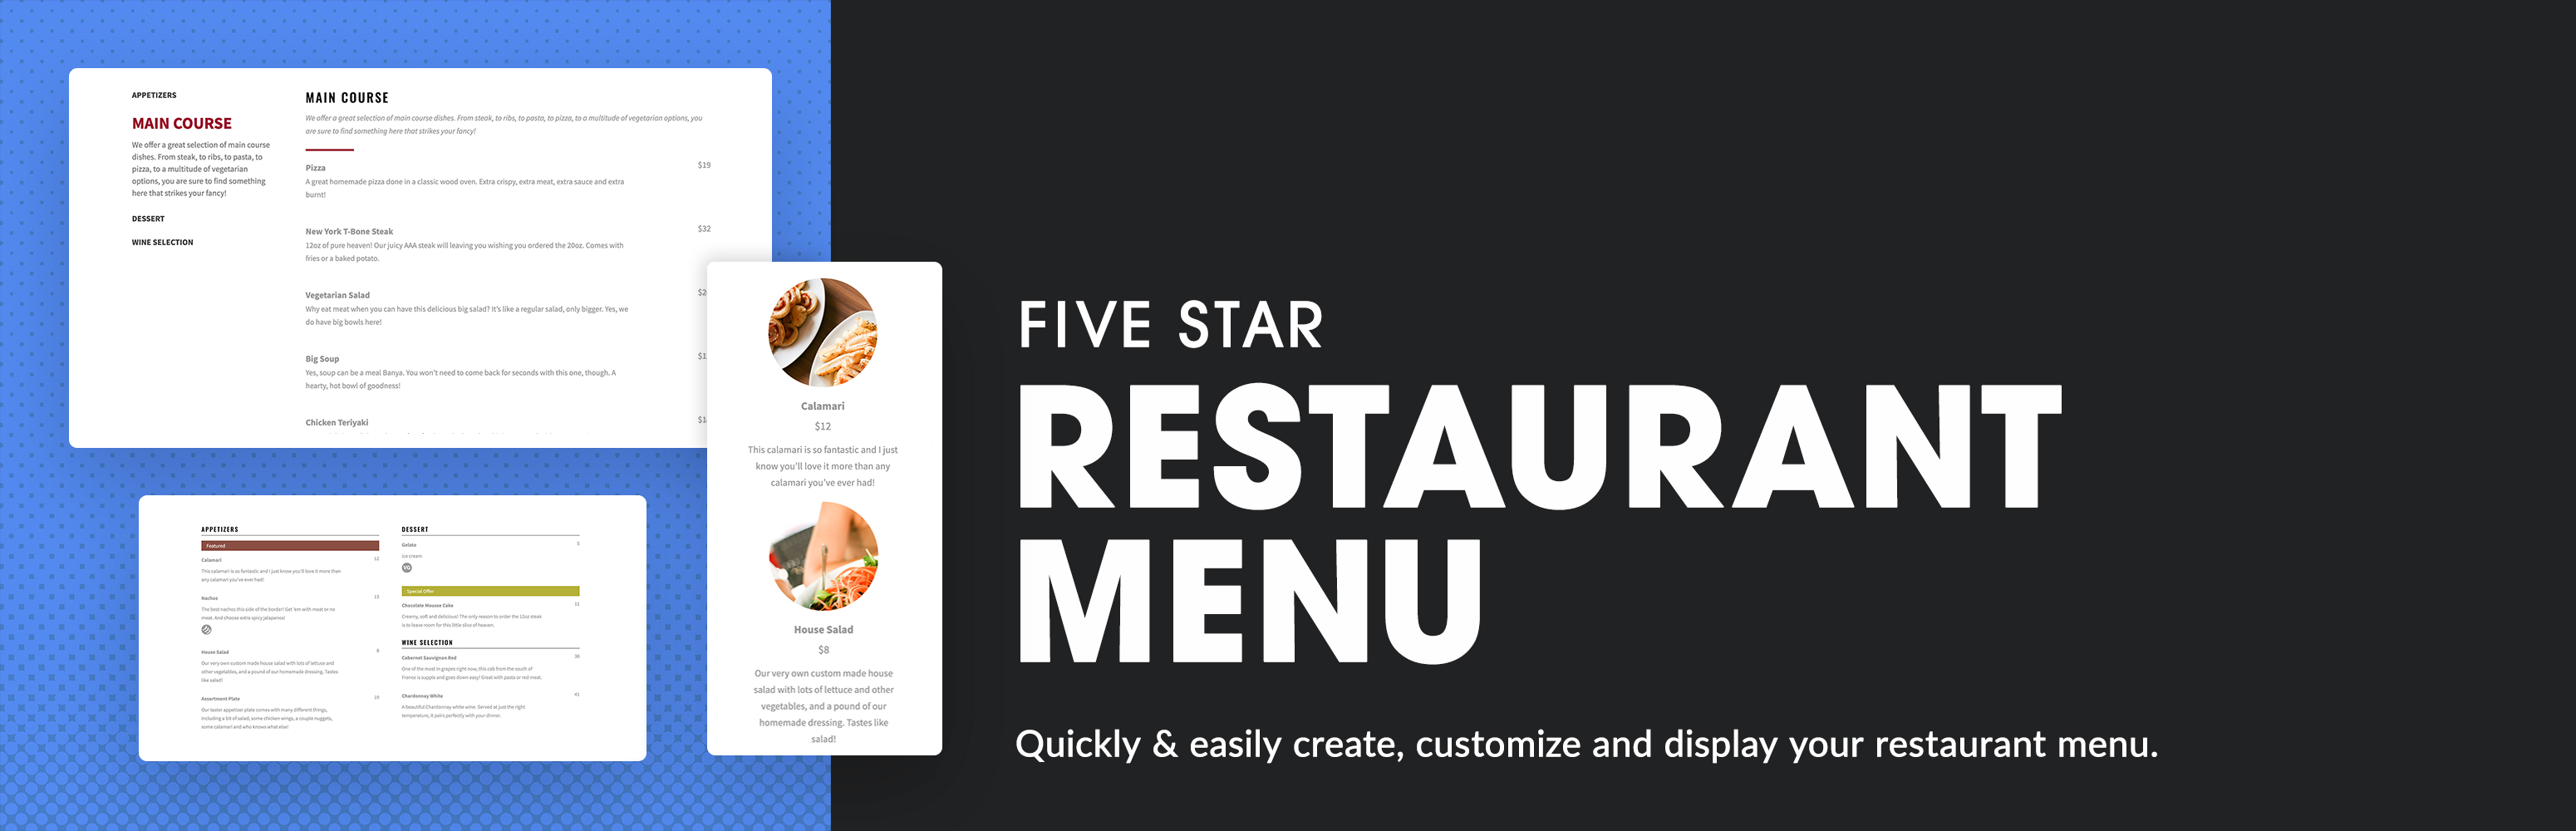 Five Star Restaurant Menu and Food Ordering